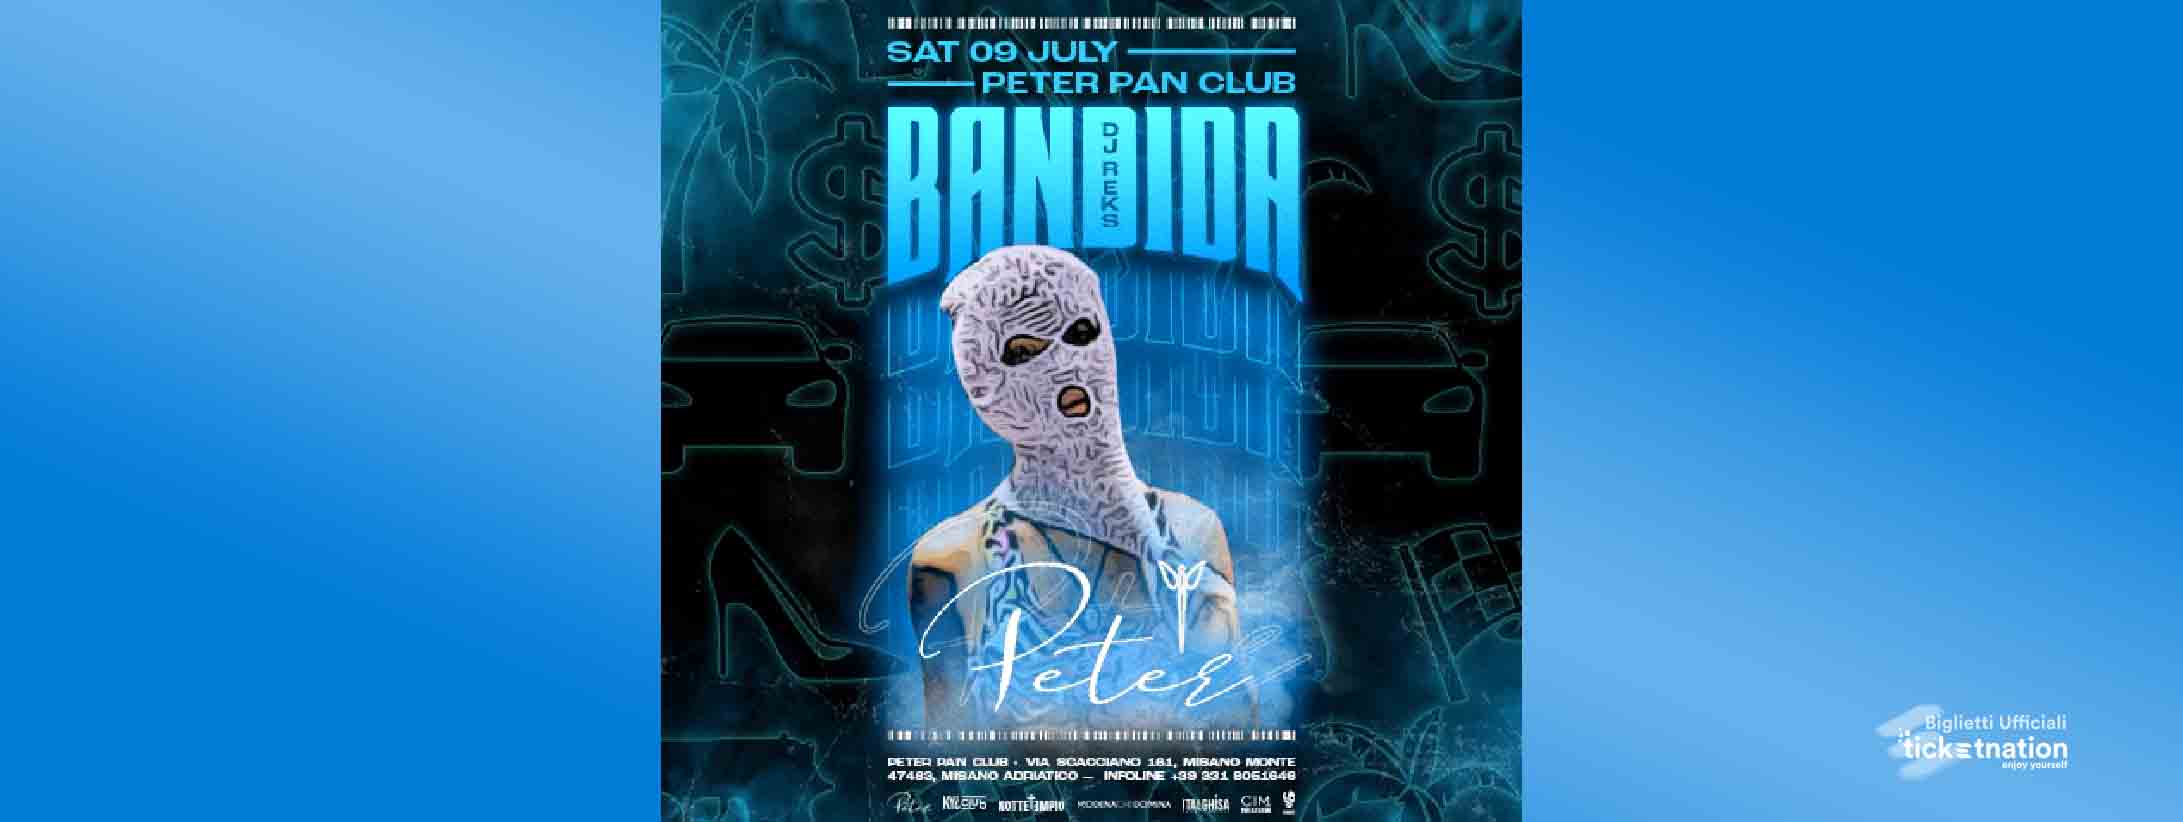 bandita-peter-pan-SABATO-09-luglio